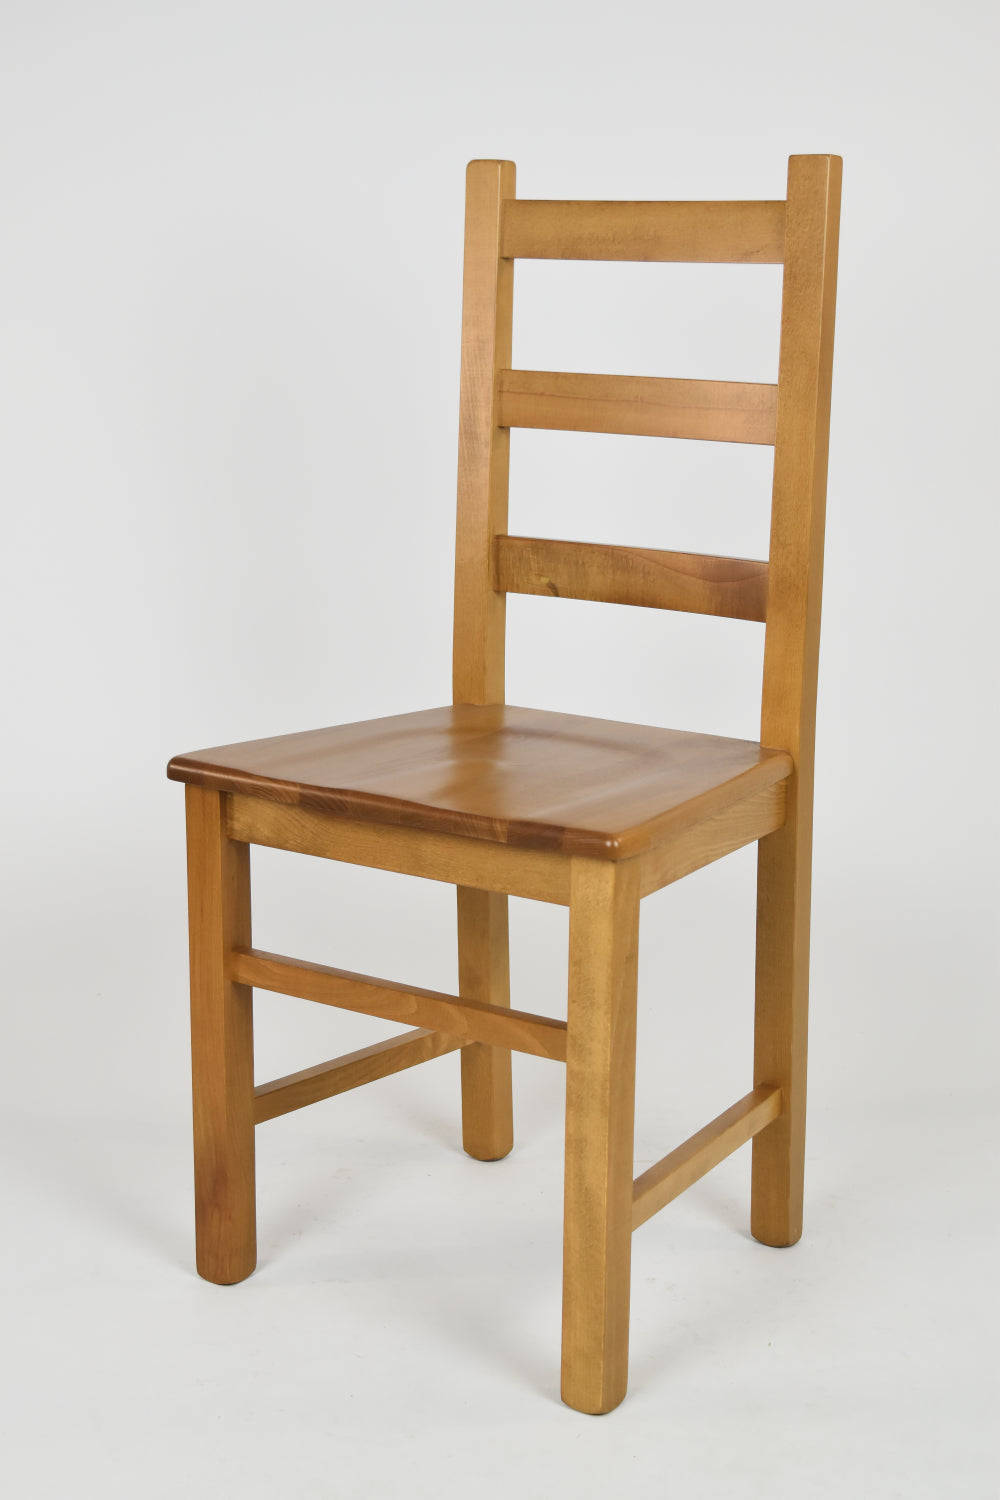 Tommychairs - Set 4 sillas de Cocina y Comedor  Rustica, Estructura en Madera de Haya Color Roble y Asiento en Madera